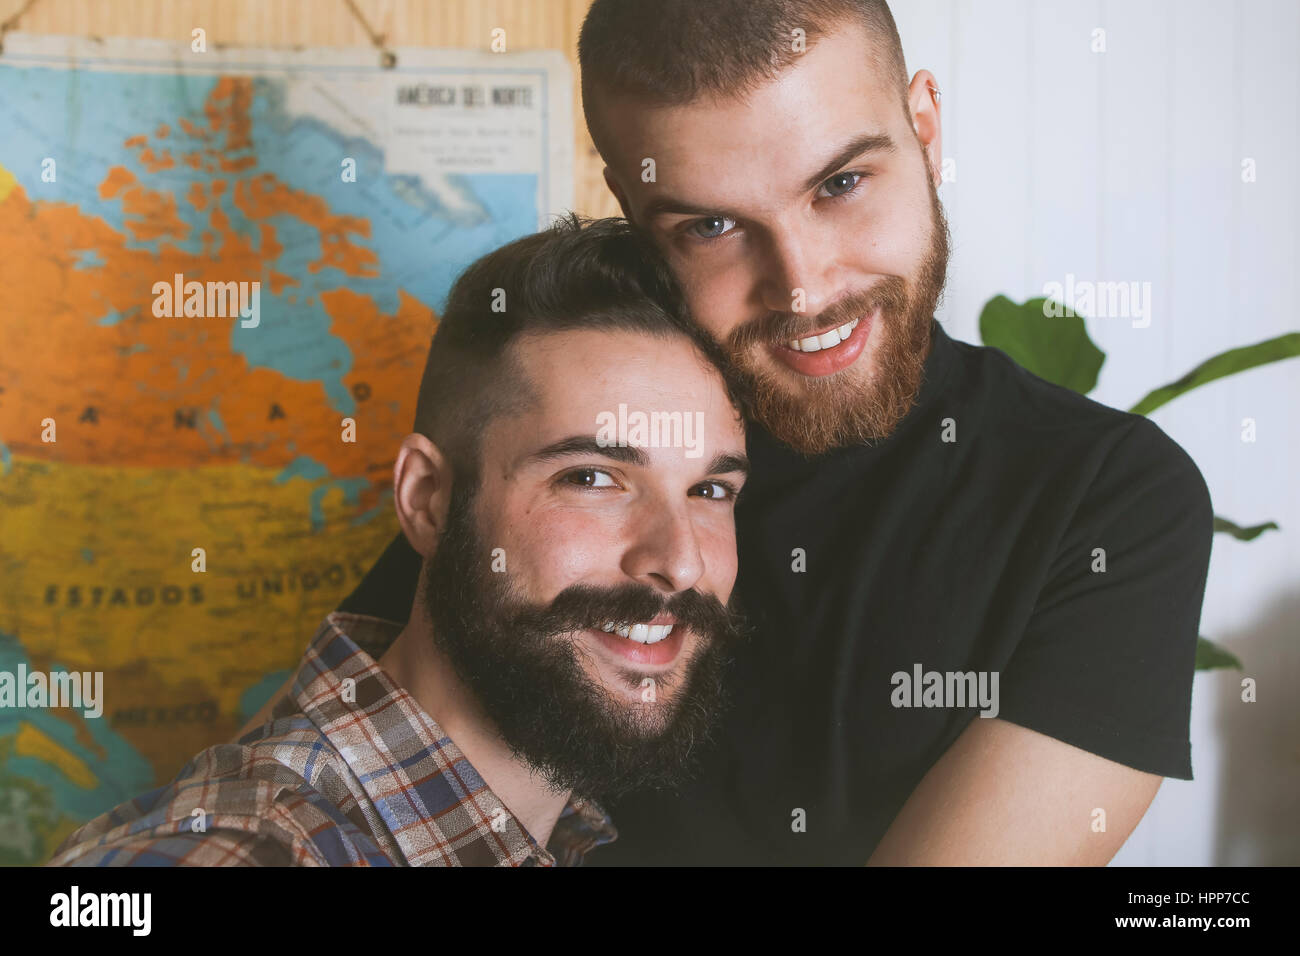 Portrait of happy gay couple Stock Photo